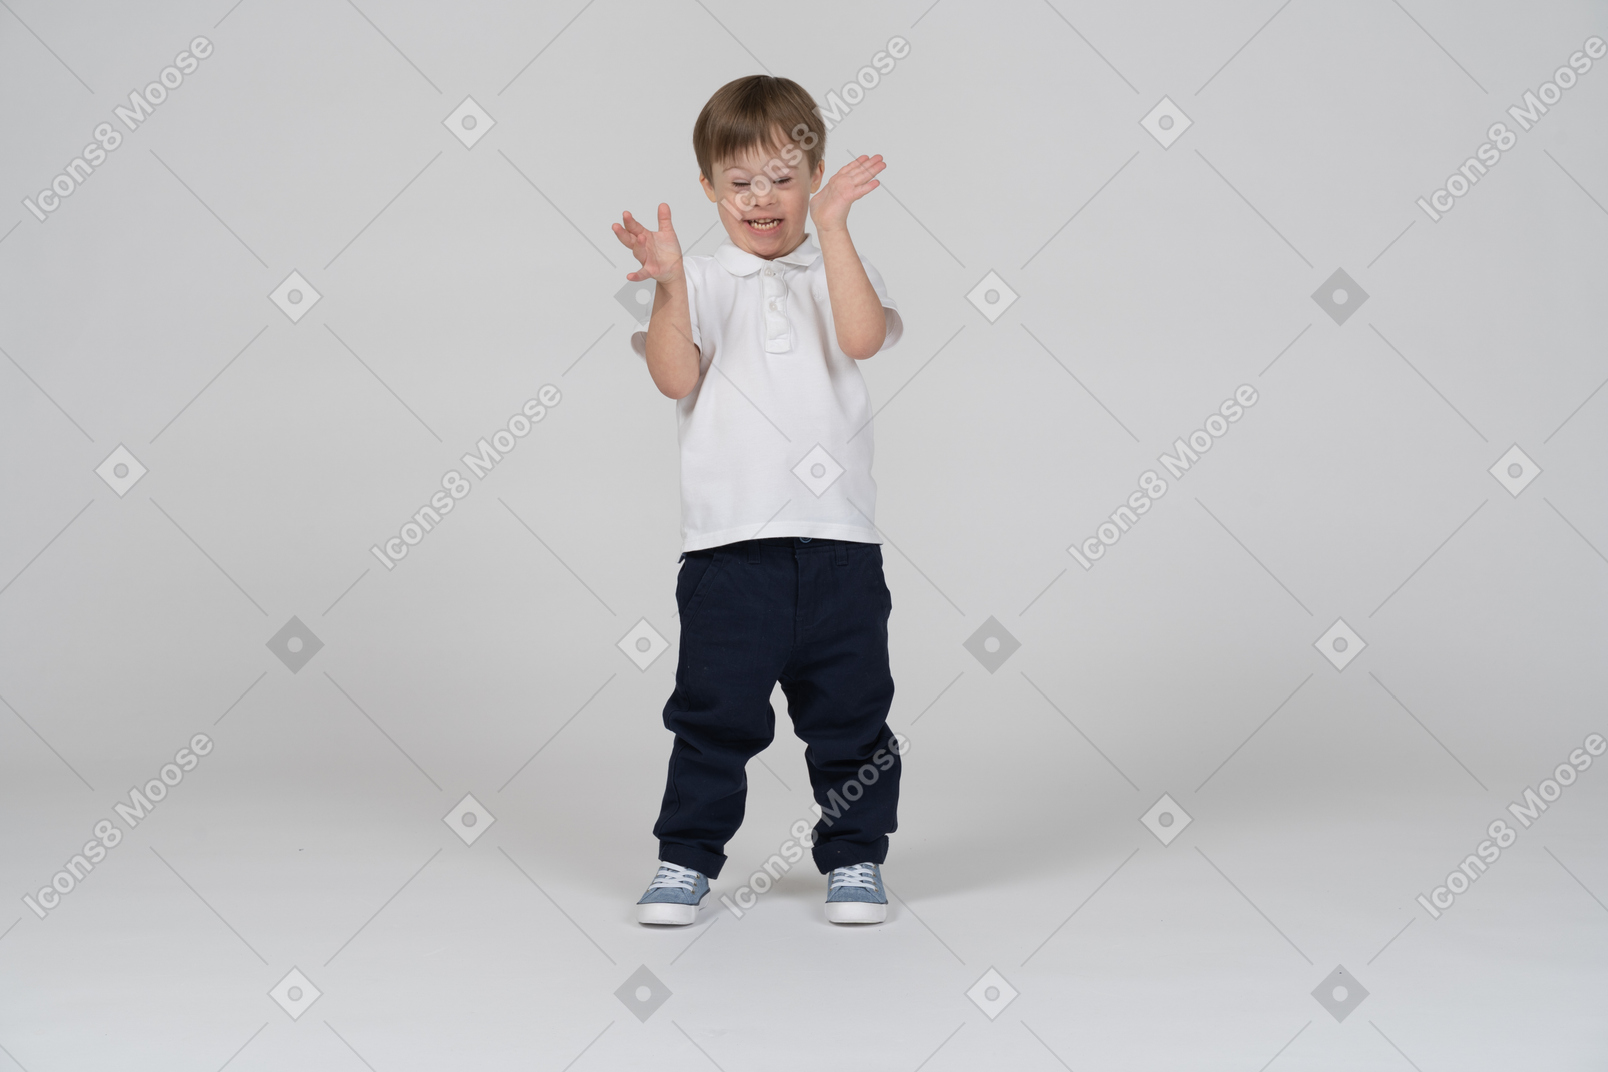 Vista frontal de un niño sonriendo y gesticulando emocionado con las manos